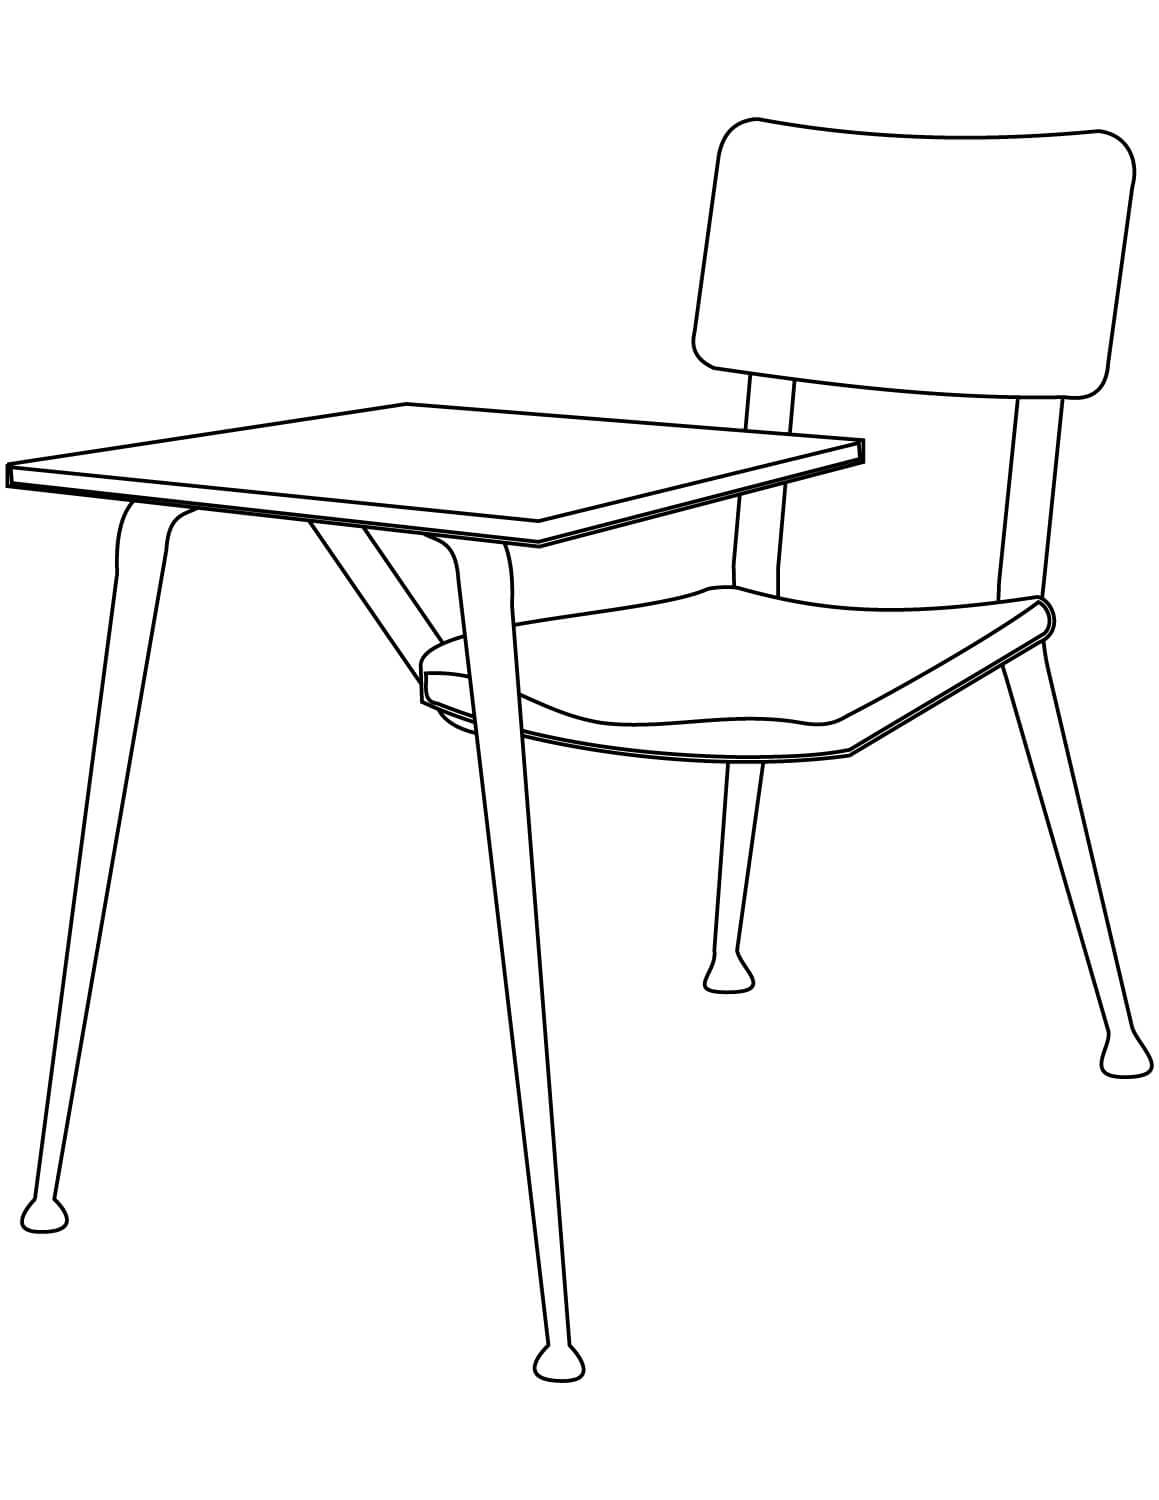 기본 의자 및 테이블